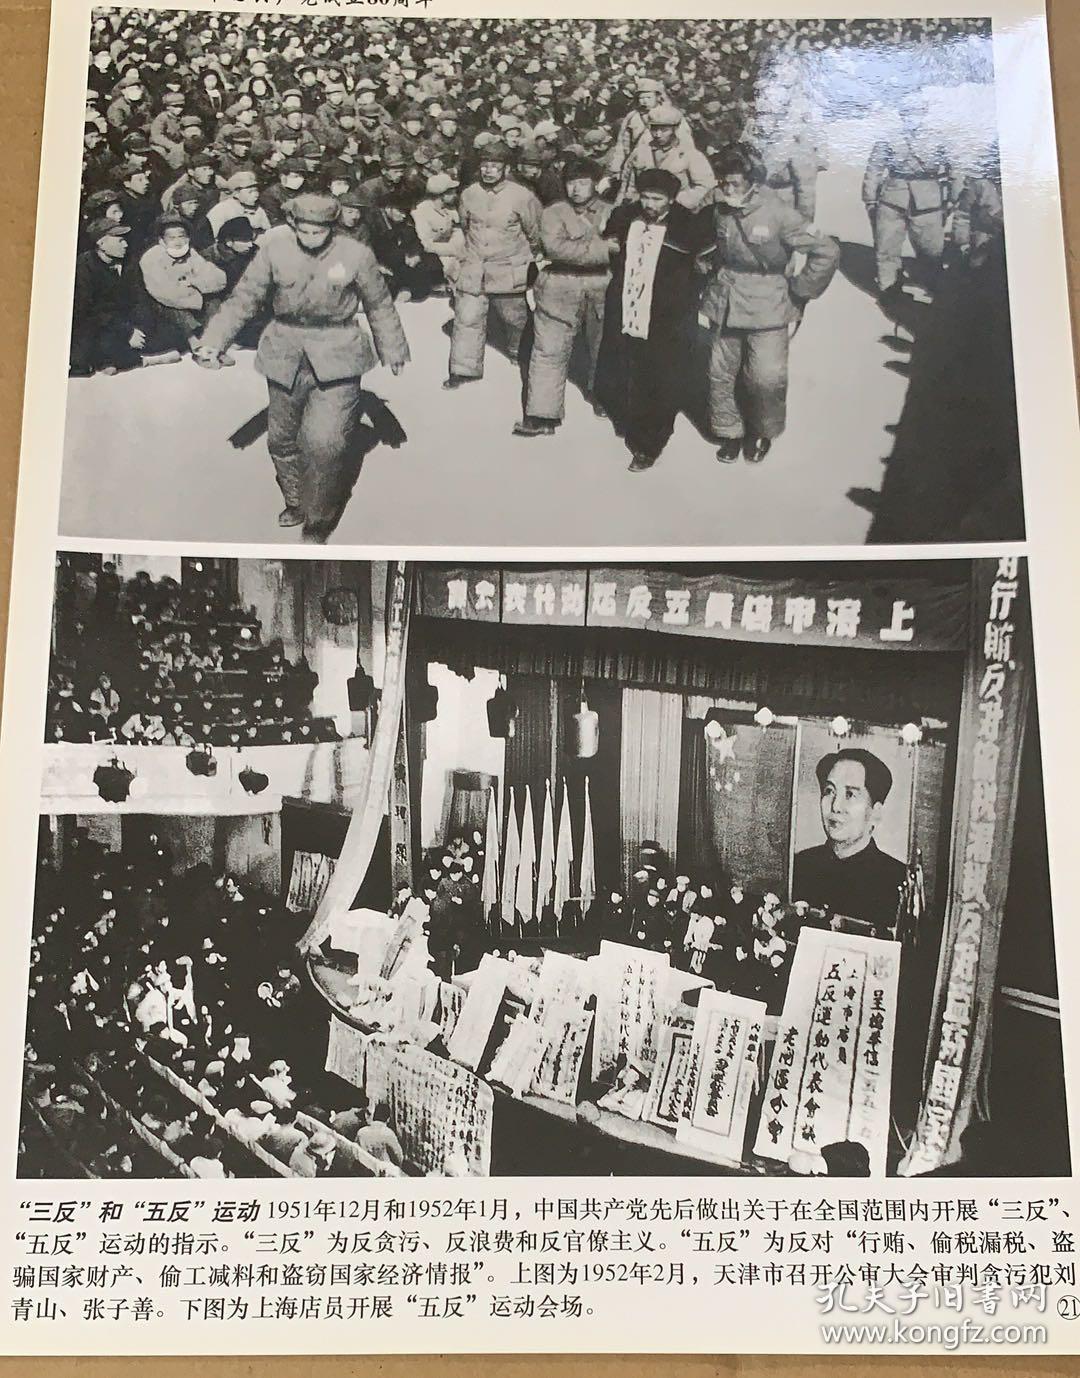 村苏维埃政府主席谢步升 党反腐败历史上被枪毙的第一个贪官丨百年百篇 - 封面新闻